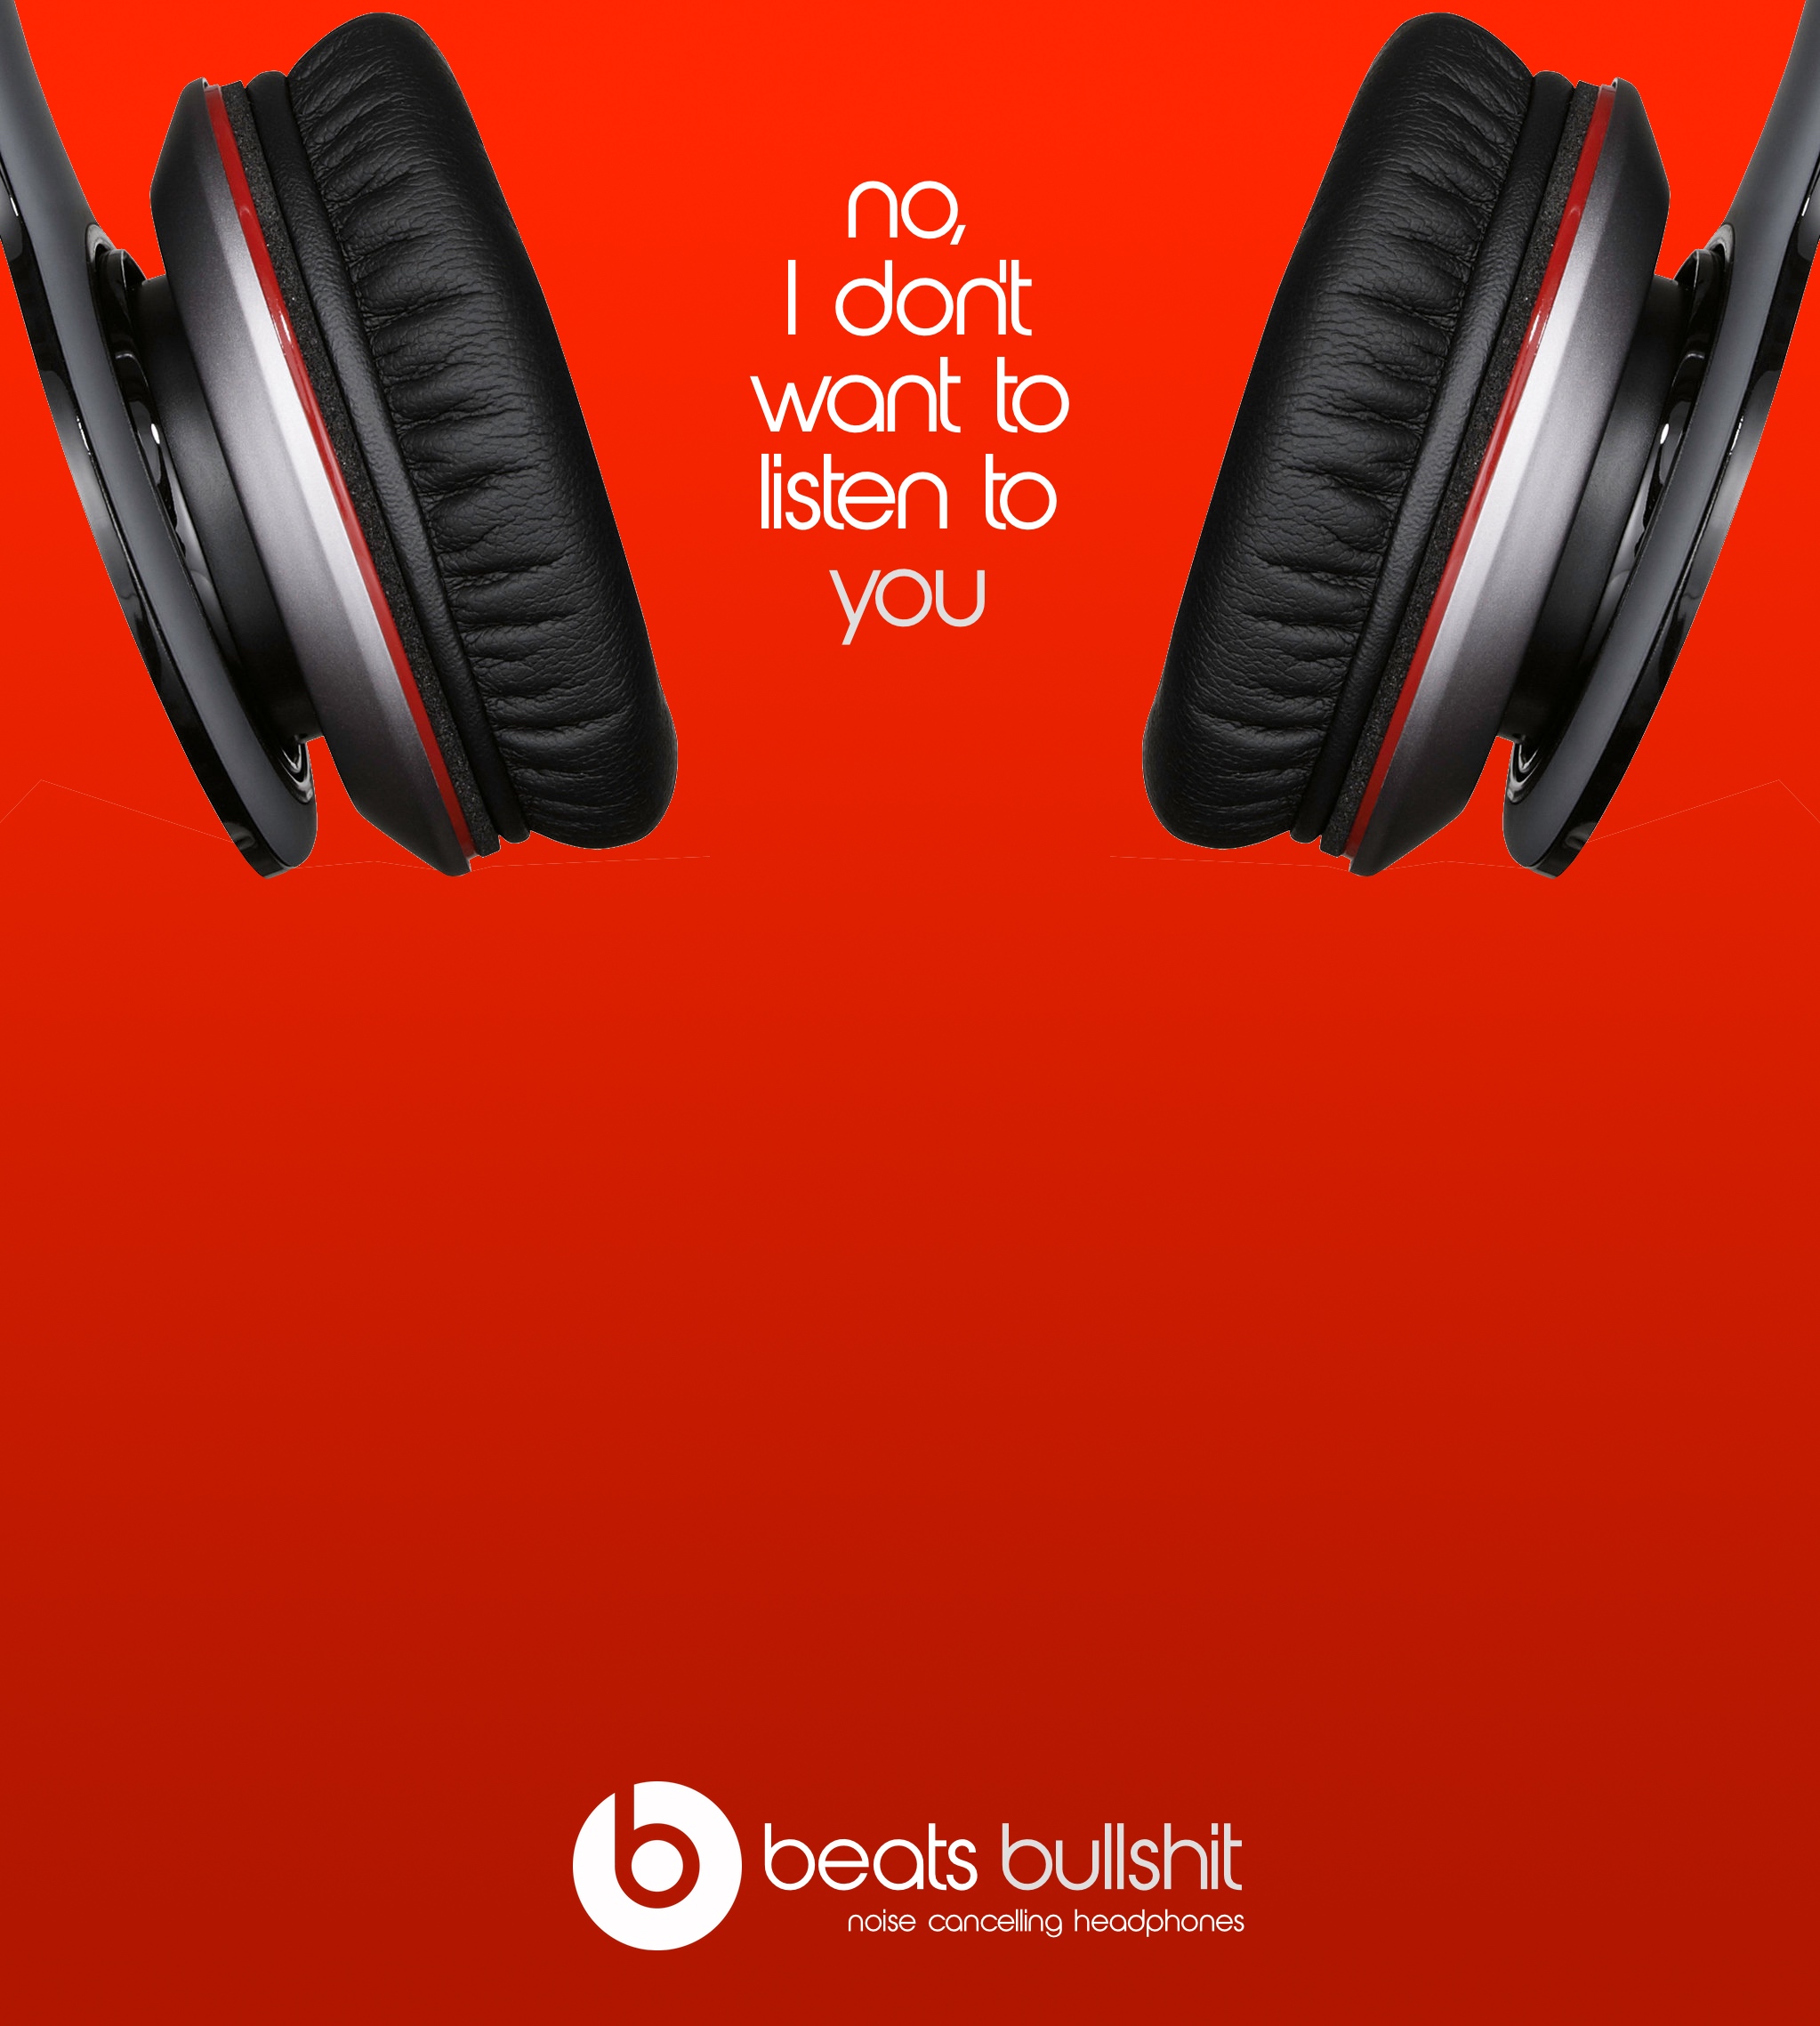 beats headphones advertisement